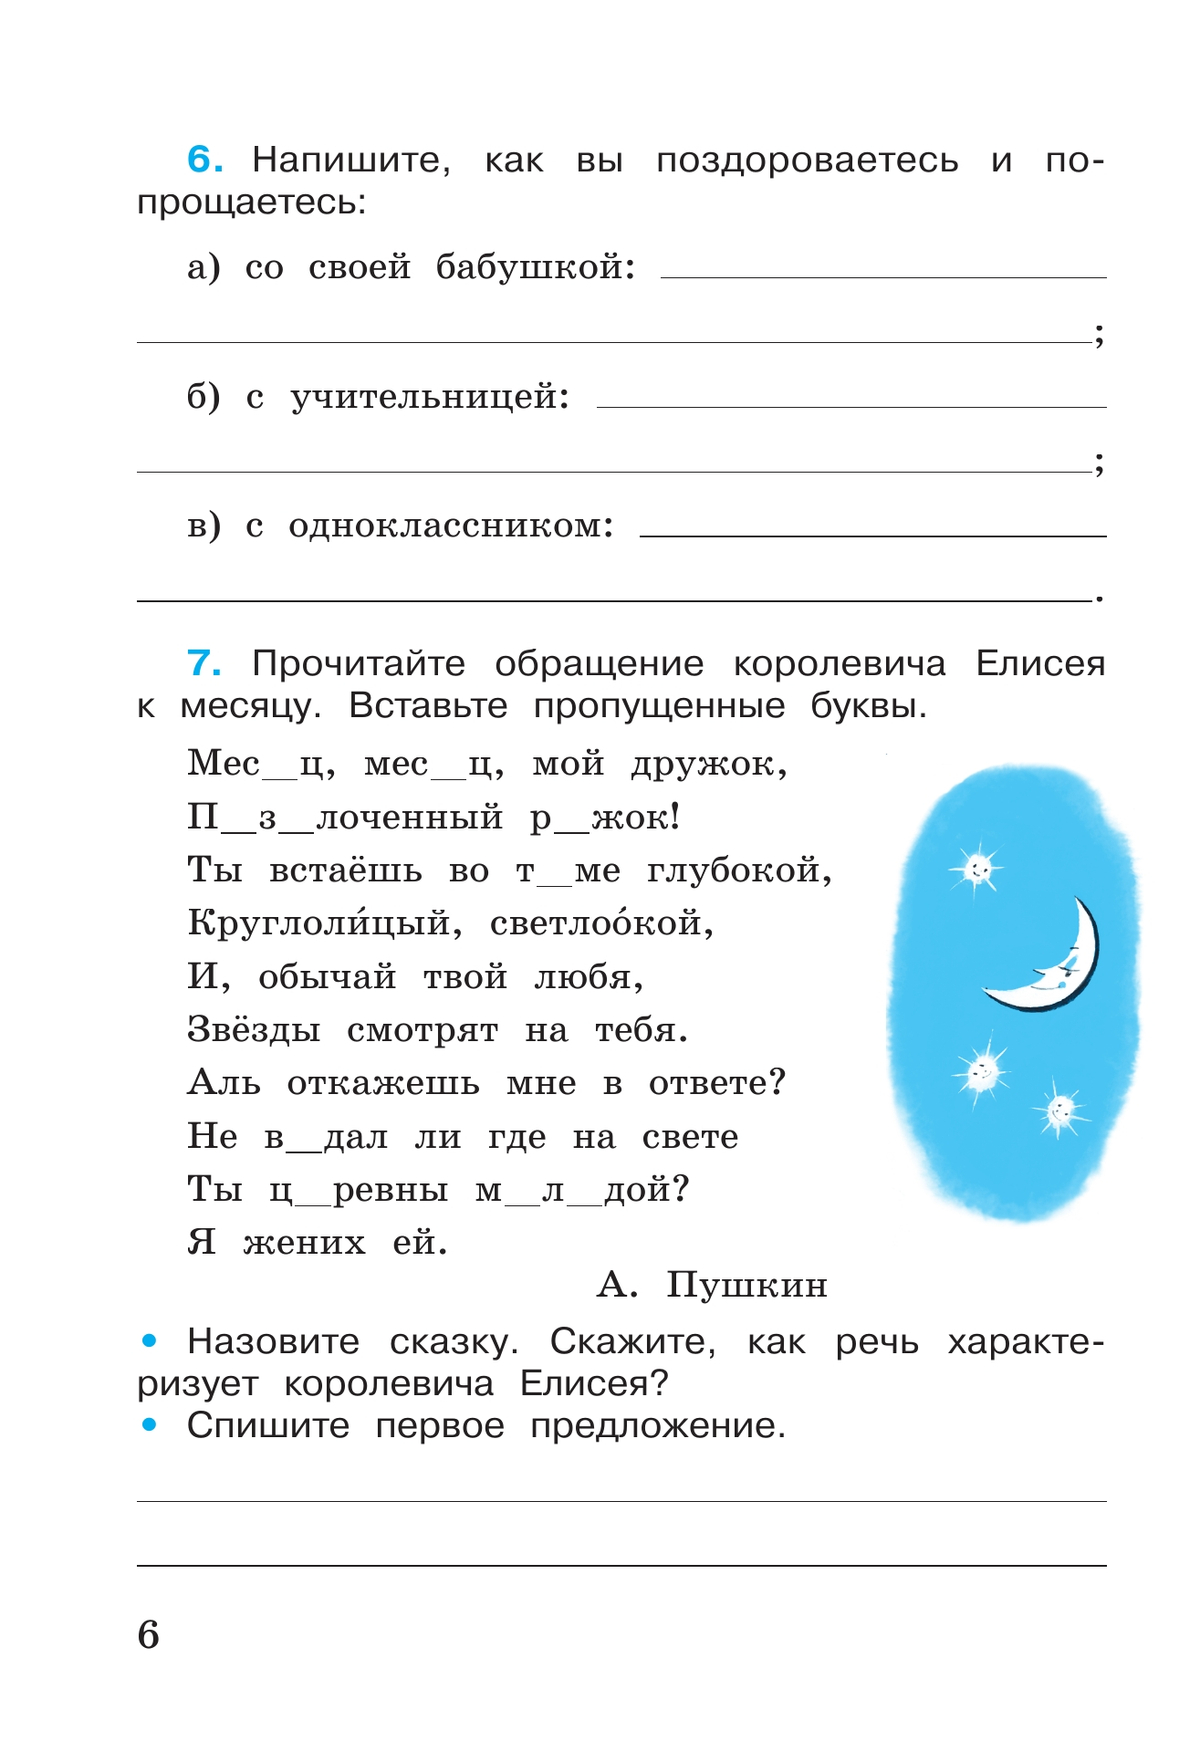 Русский язык. Рабочая тетрадь. 4 класс. В 2 частях. Часть 1 5